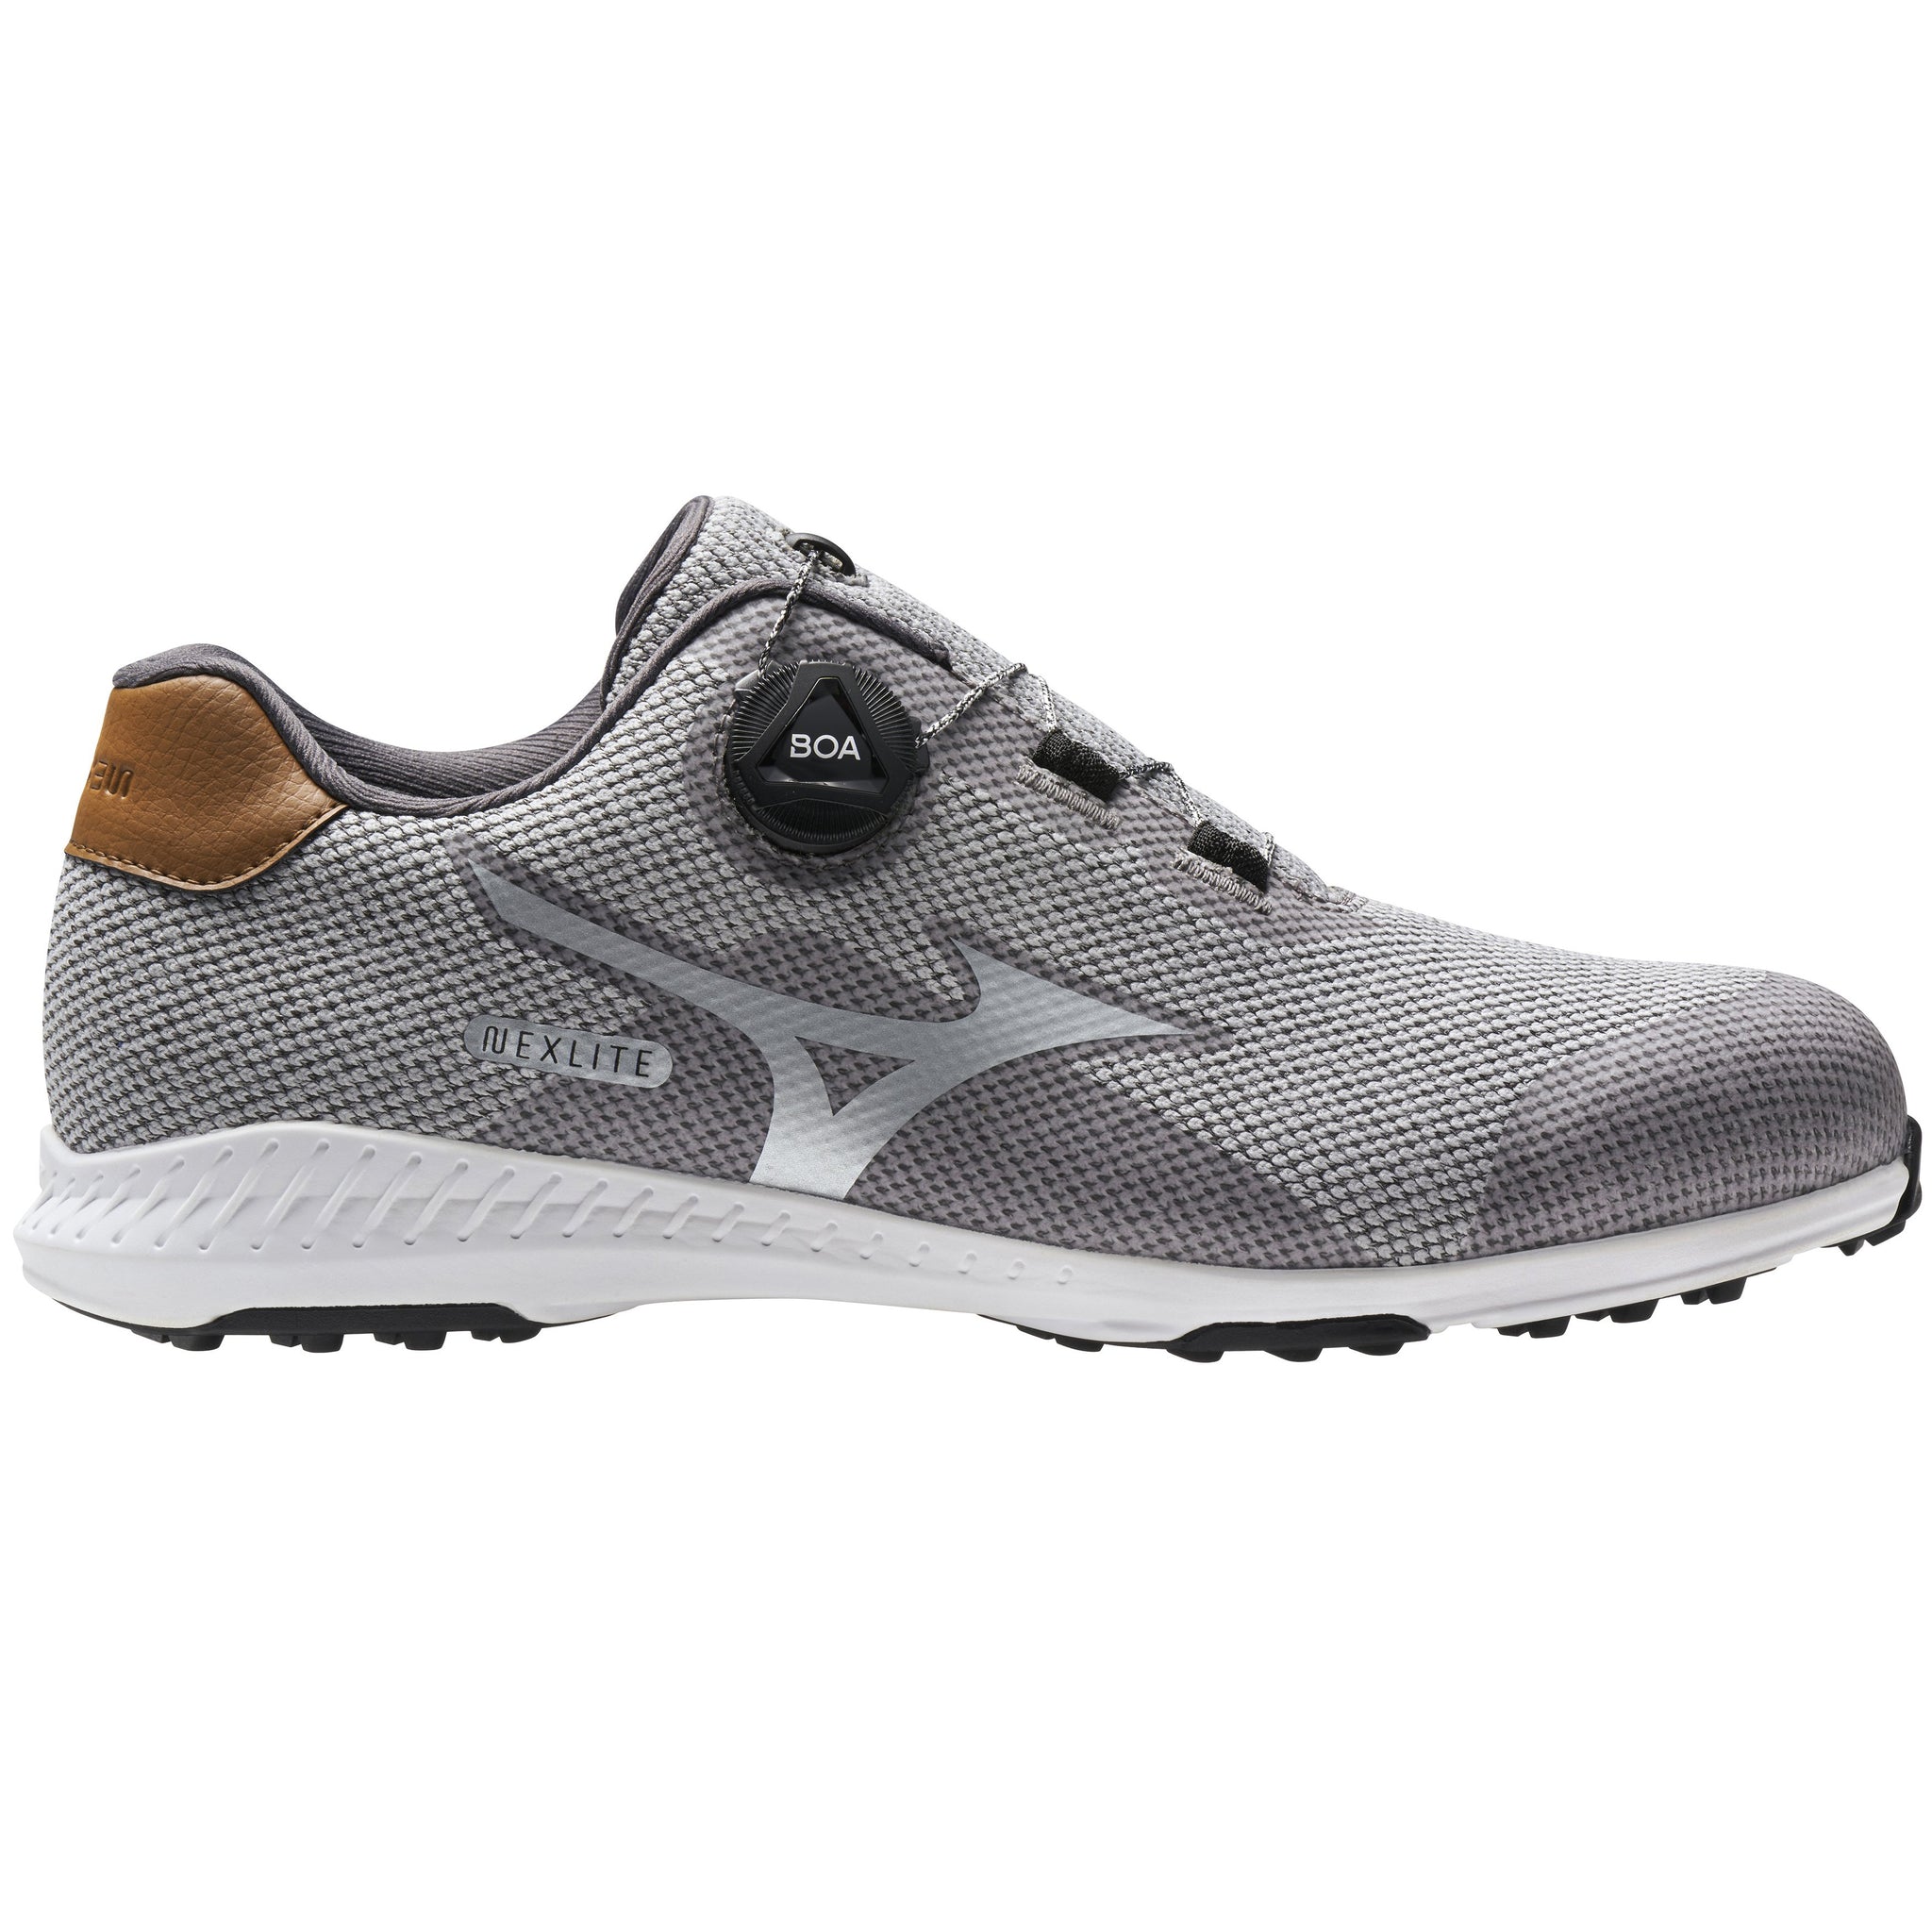 mizuno-nexlite-008-boa-golf-shoes-51gm2120-grey-05